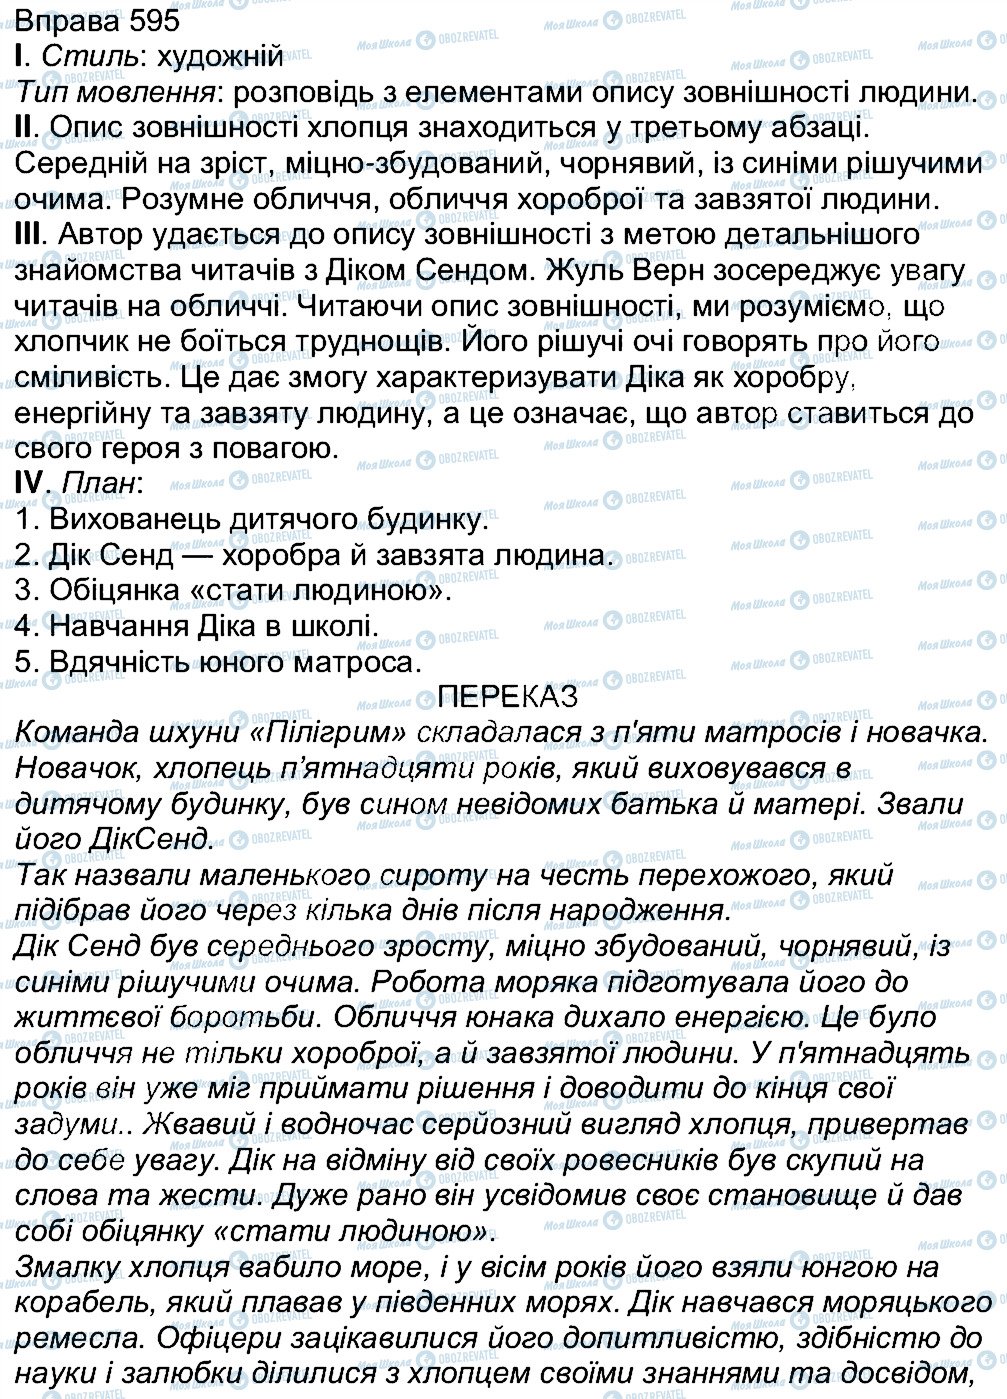 ГДЗ Українська мова 7 клас сторінка 595